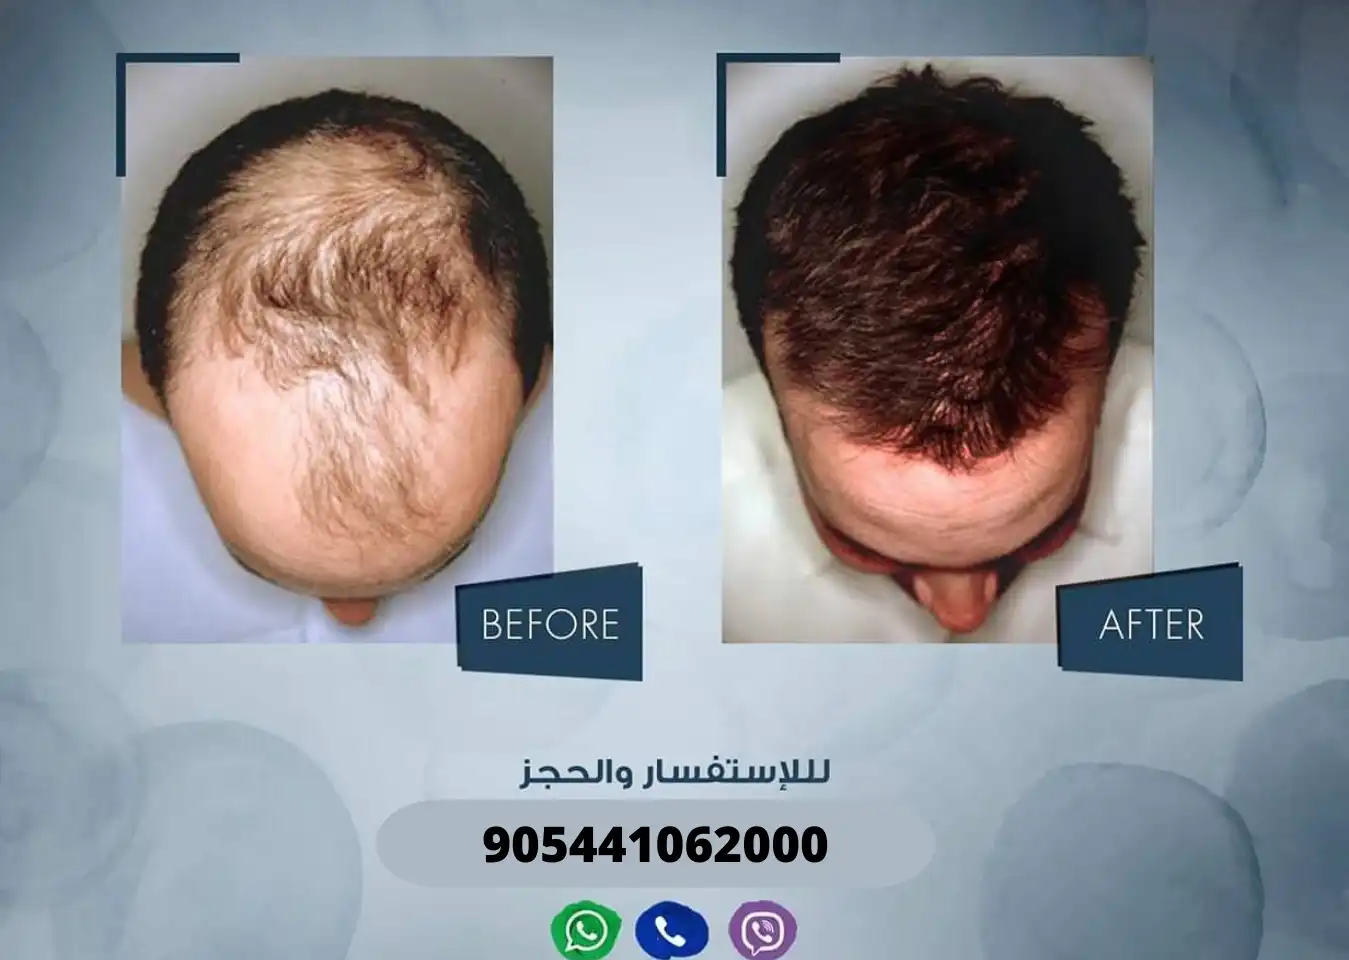 رجل يعاني من الصلع الأمامي قبل وبعد إجراء عملية زراعة الشعر في مركز آرت لزراعة الشعر